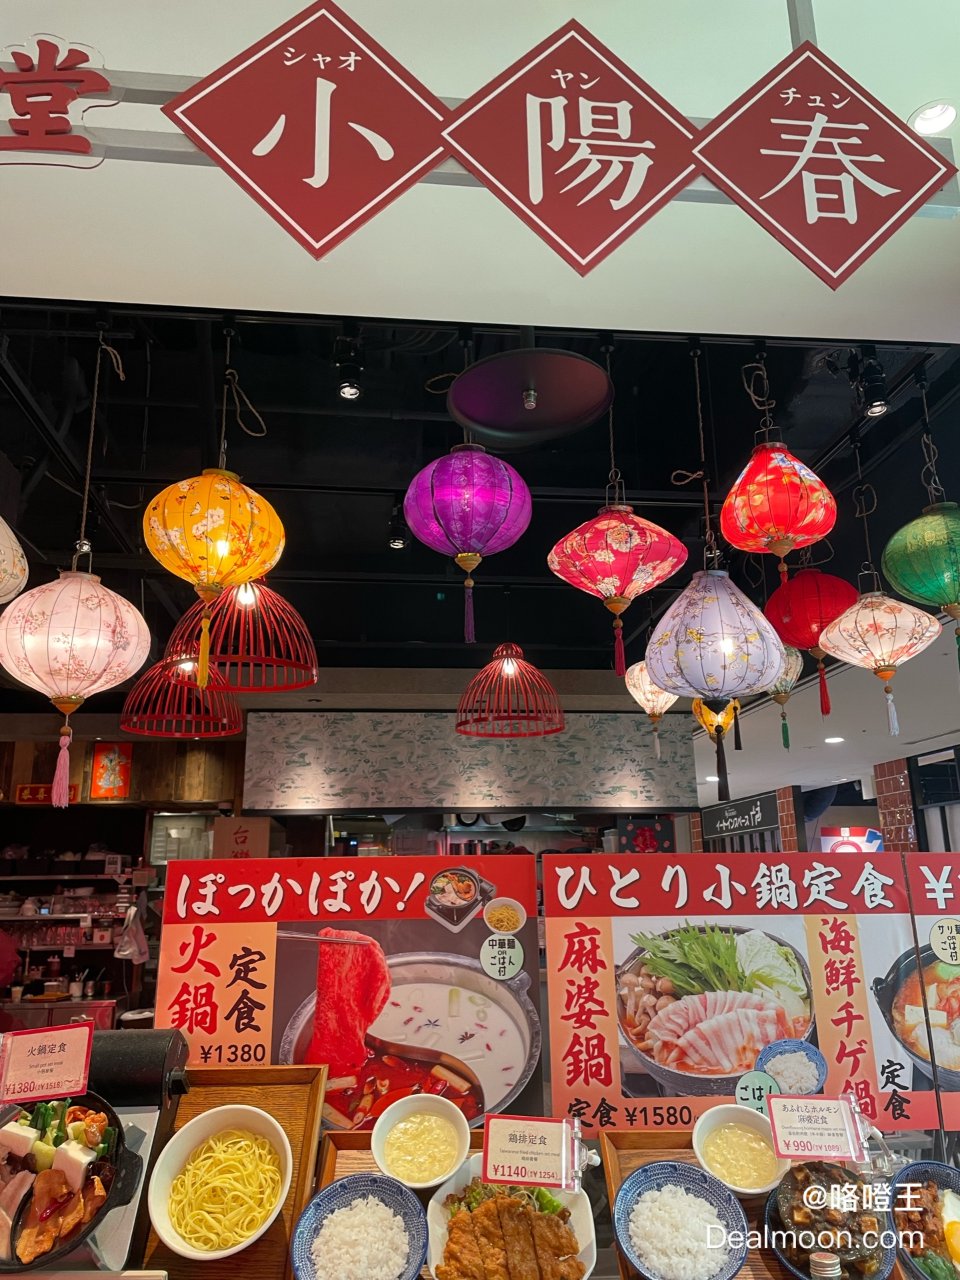 日本东京的台湾食堂小阳春...